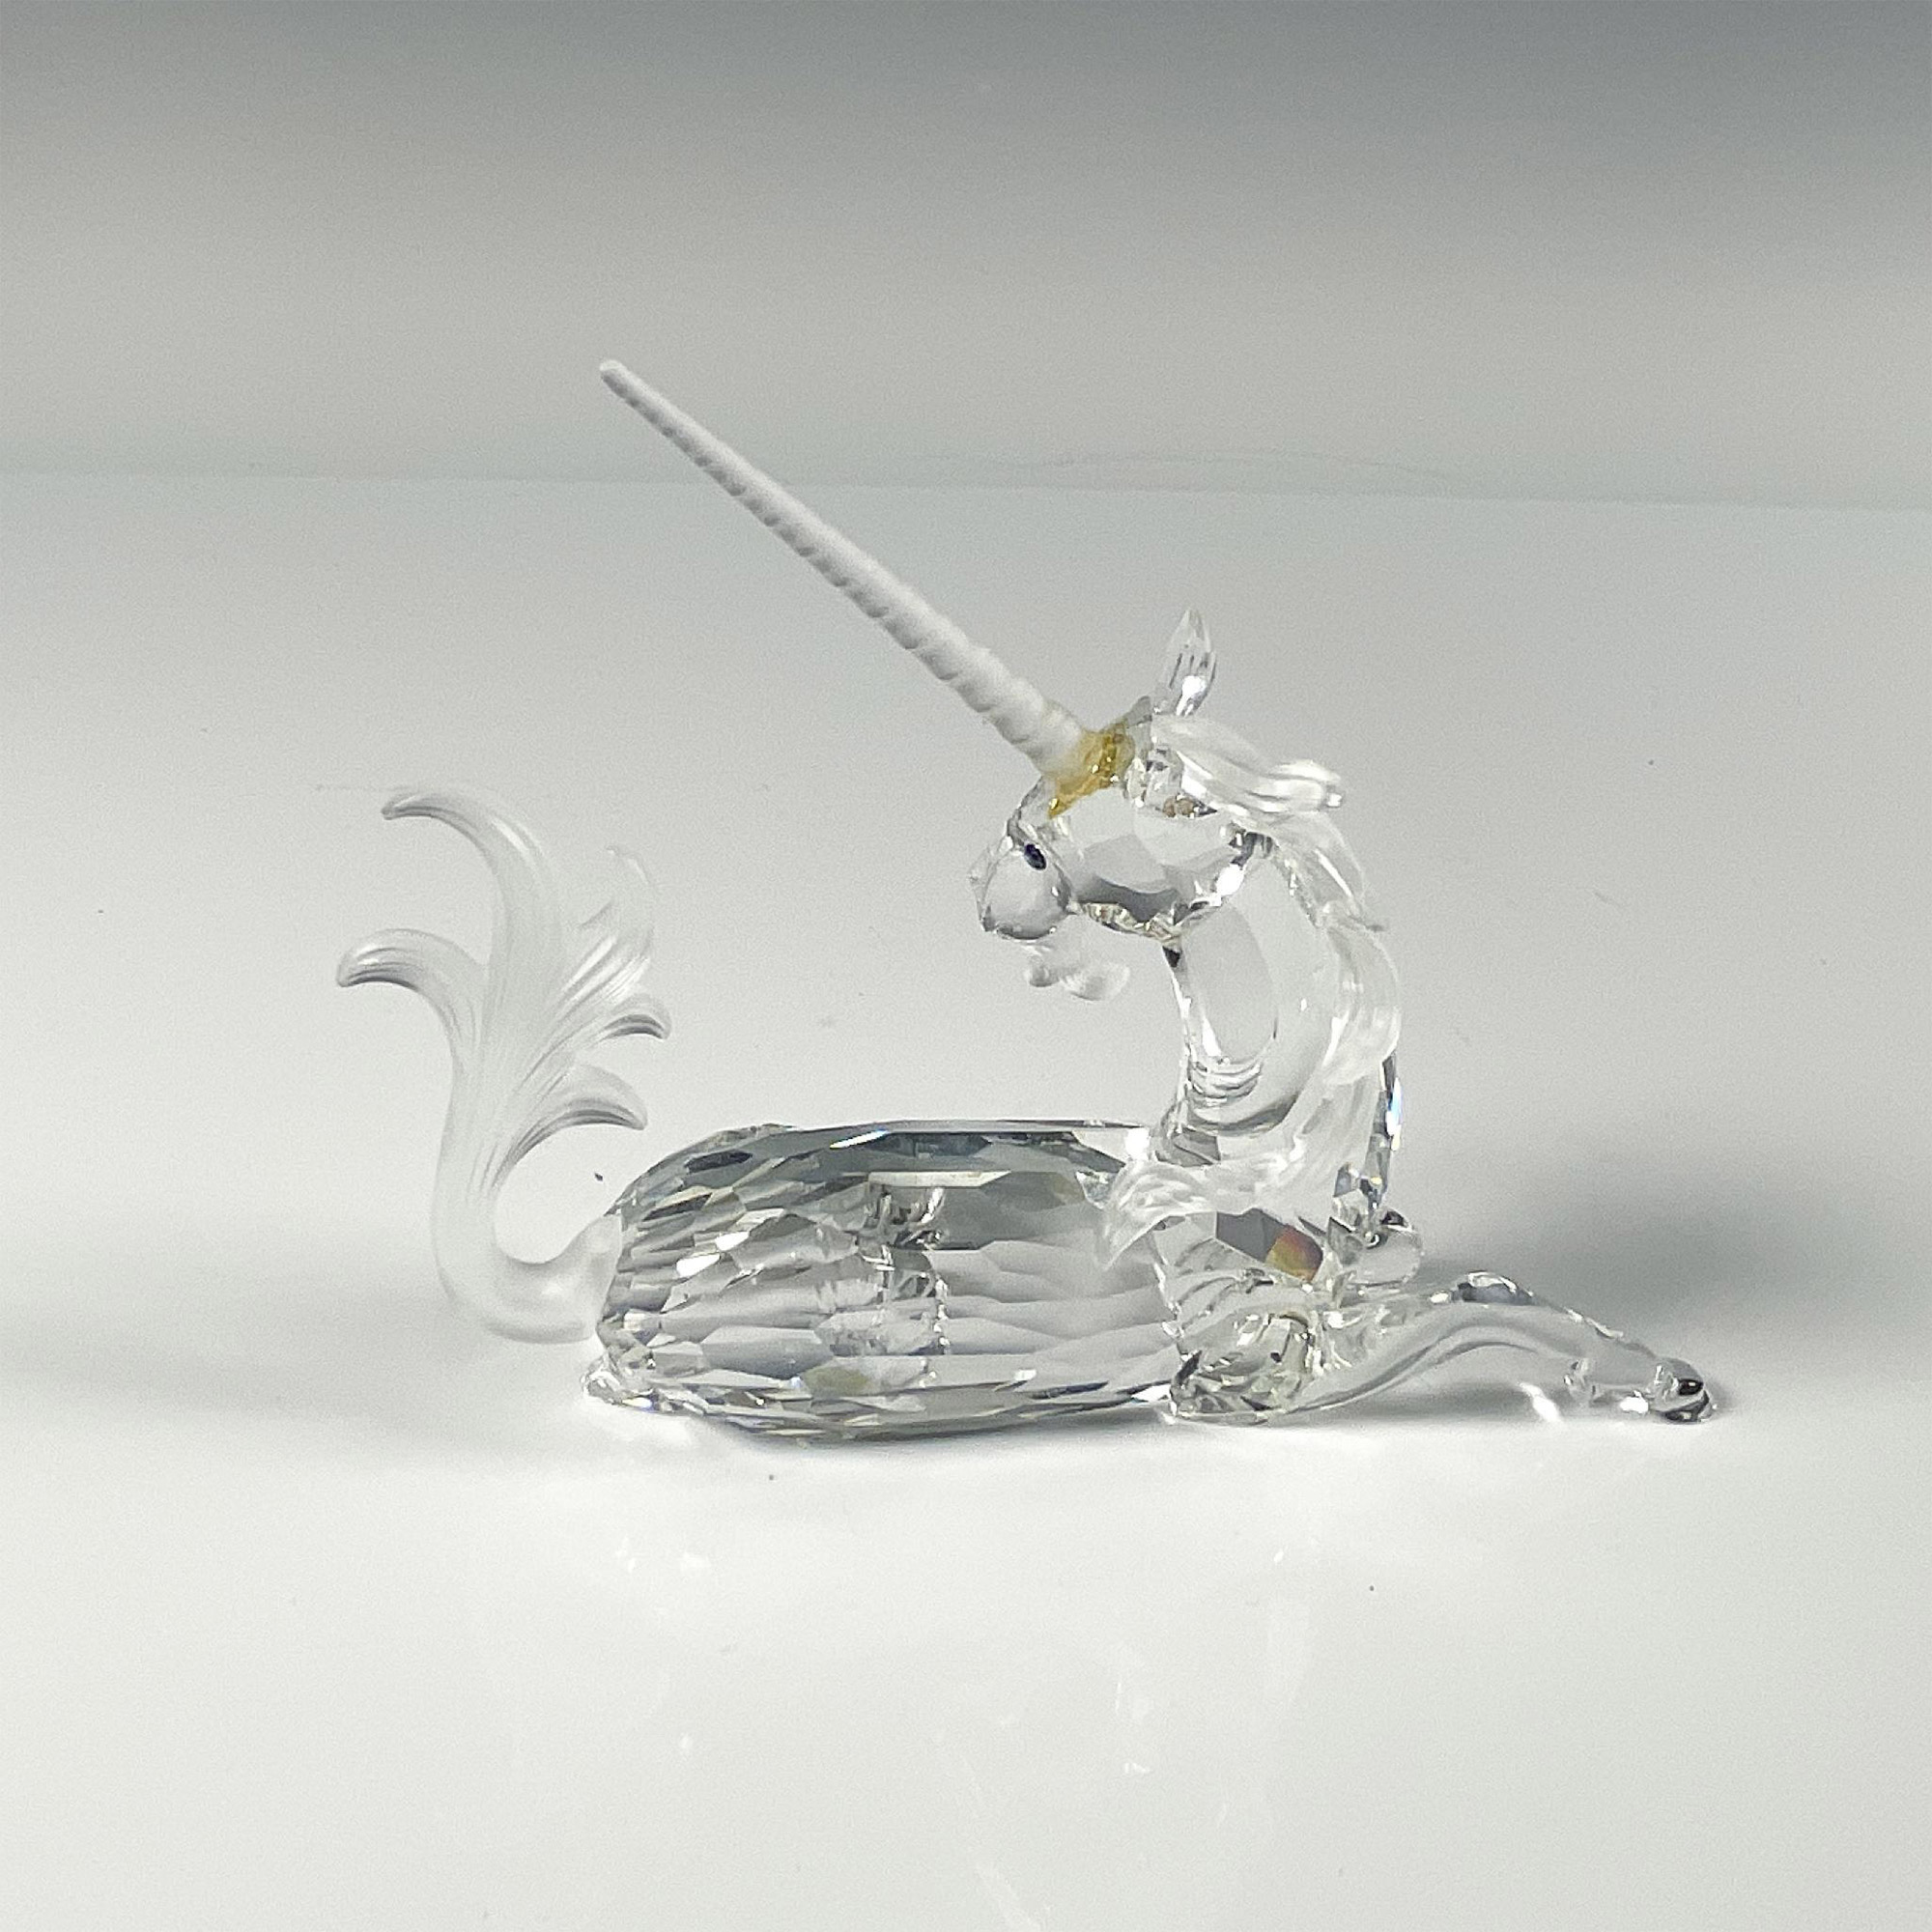 Swarovski Crystal Figurine, The Unicorn - Image 2 of 5